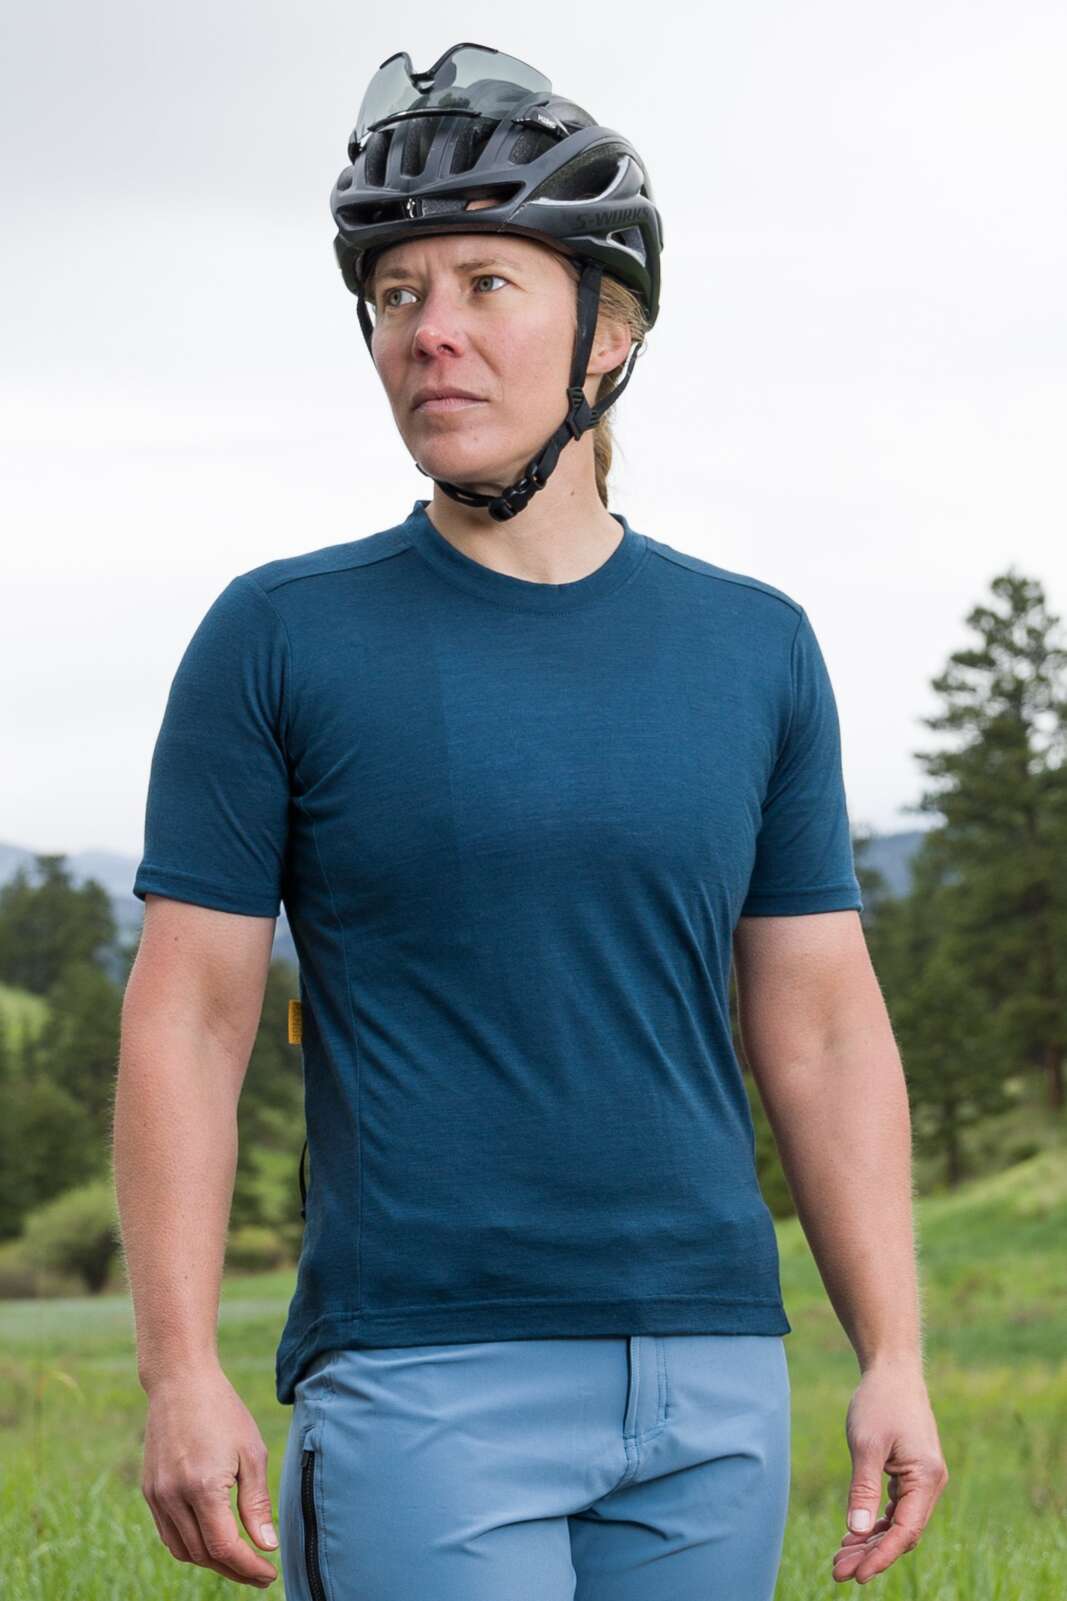 Women's Merino Wool Mountain Bike Shirt - Front View